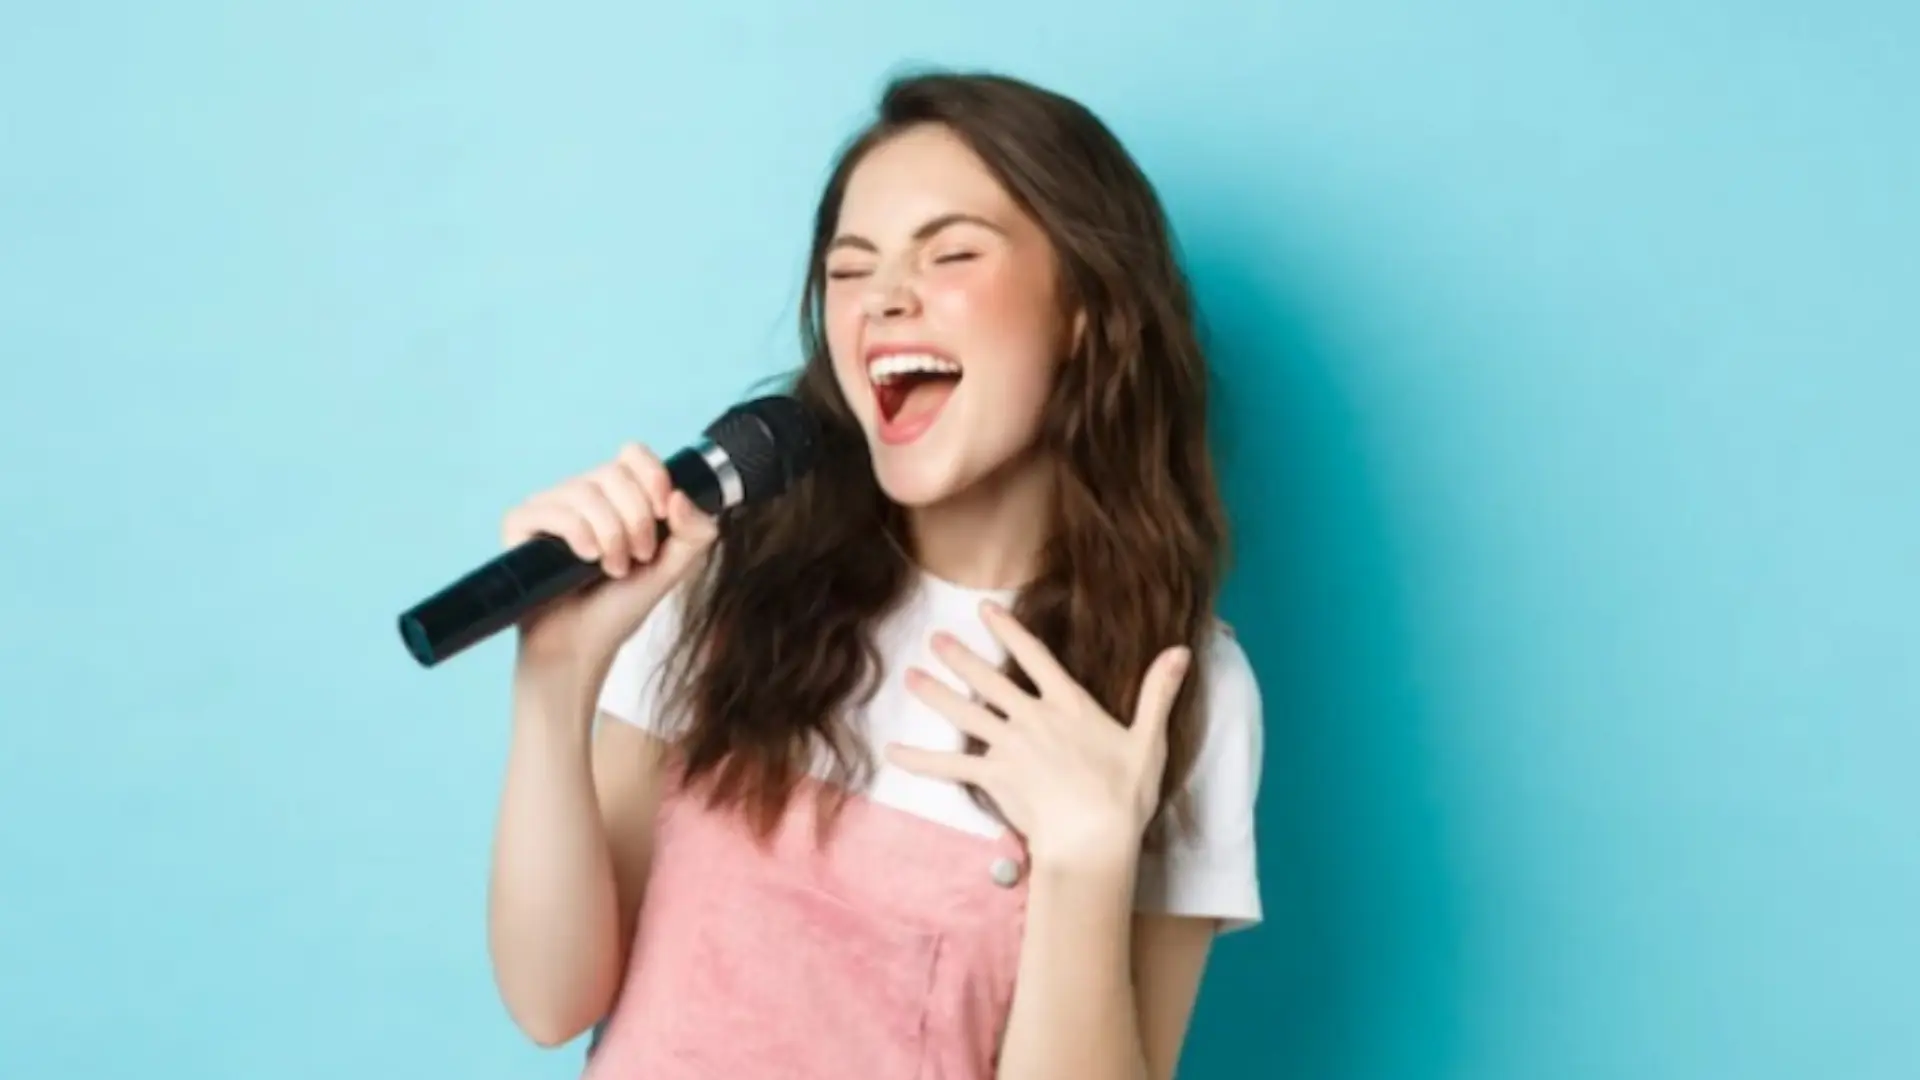 Mengapa menyanyikan lagu tidak boleh dilakukan asal-asalan